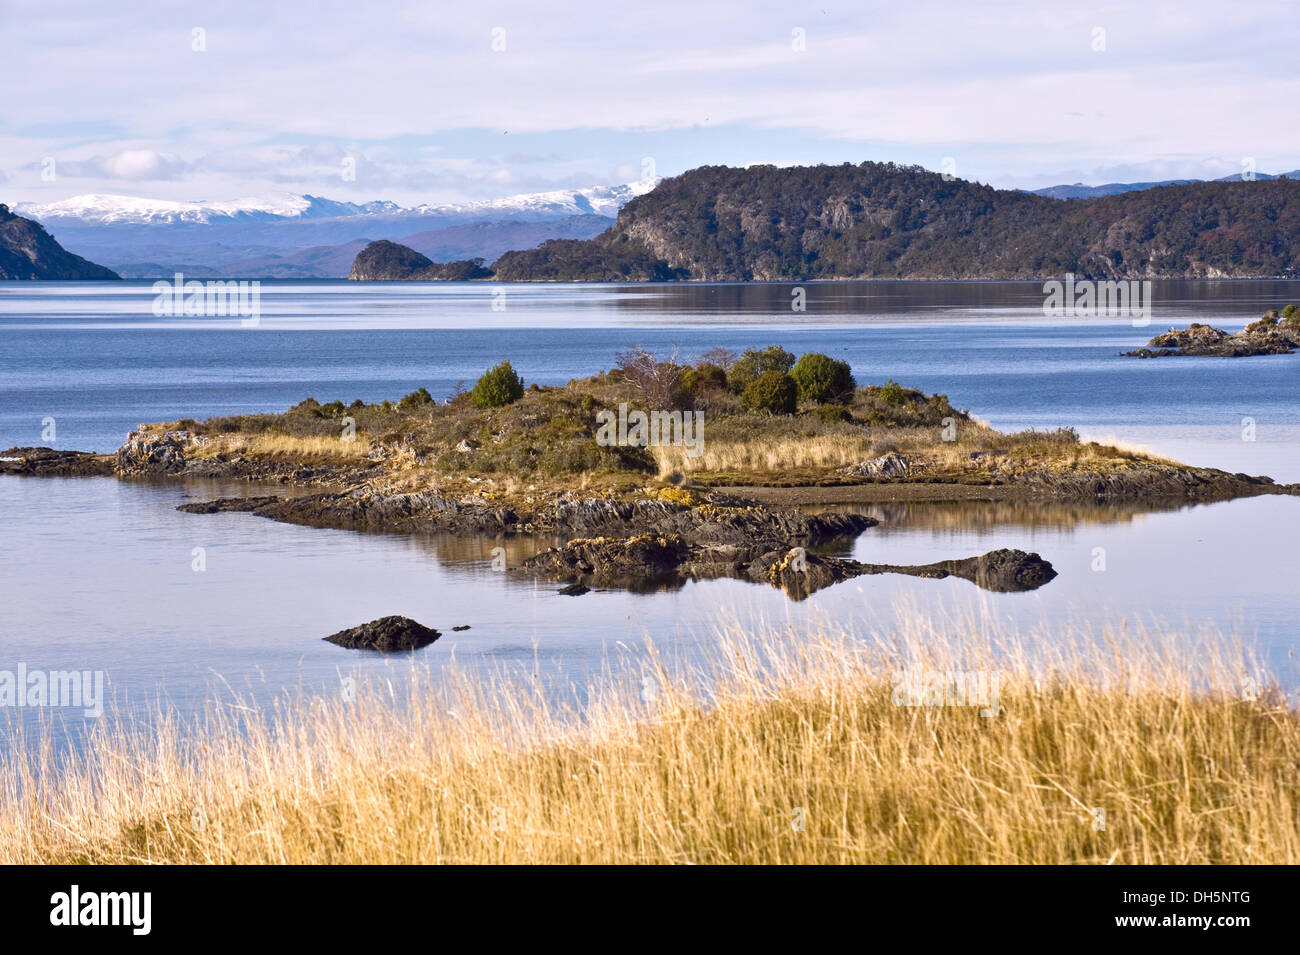 End of the Fireland, Tierra del Fuego. Lapataia Bay in Tierra del Fuego, Argentina Stock Photo